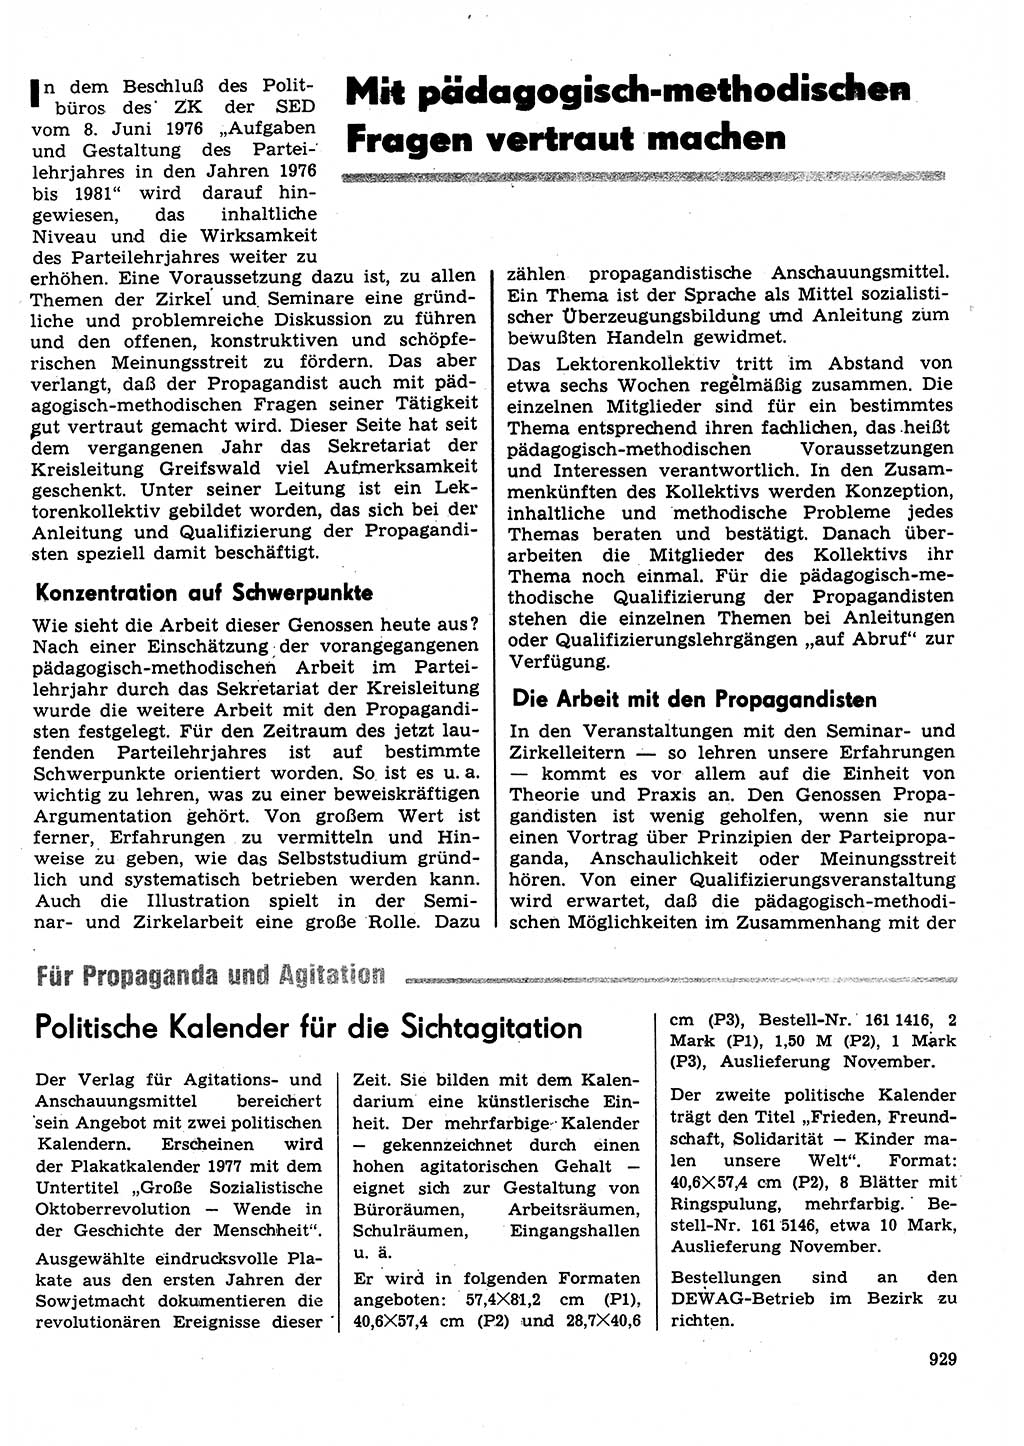 Neuer Weg (NW), Organ des Zentralkomitees (ZK) der SED (Sozialistische Einheitspartei Deutschlands) für Fragen des Parteilebens, 31. Jahrgang [Deutsche Demokratische Republik (DDR)] 1976, Seite 929 (NW ZK SED DDR 1976, S. 929)